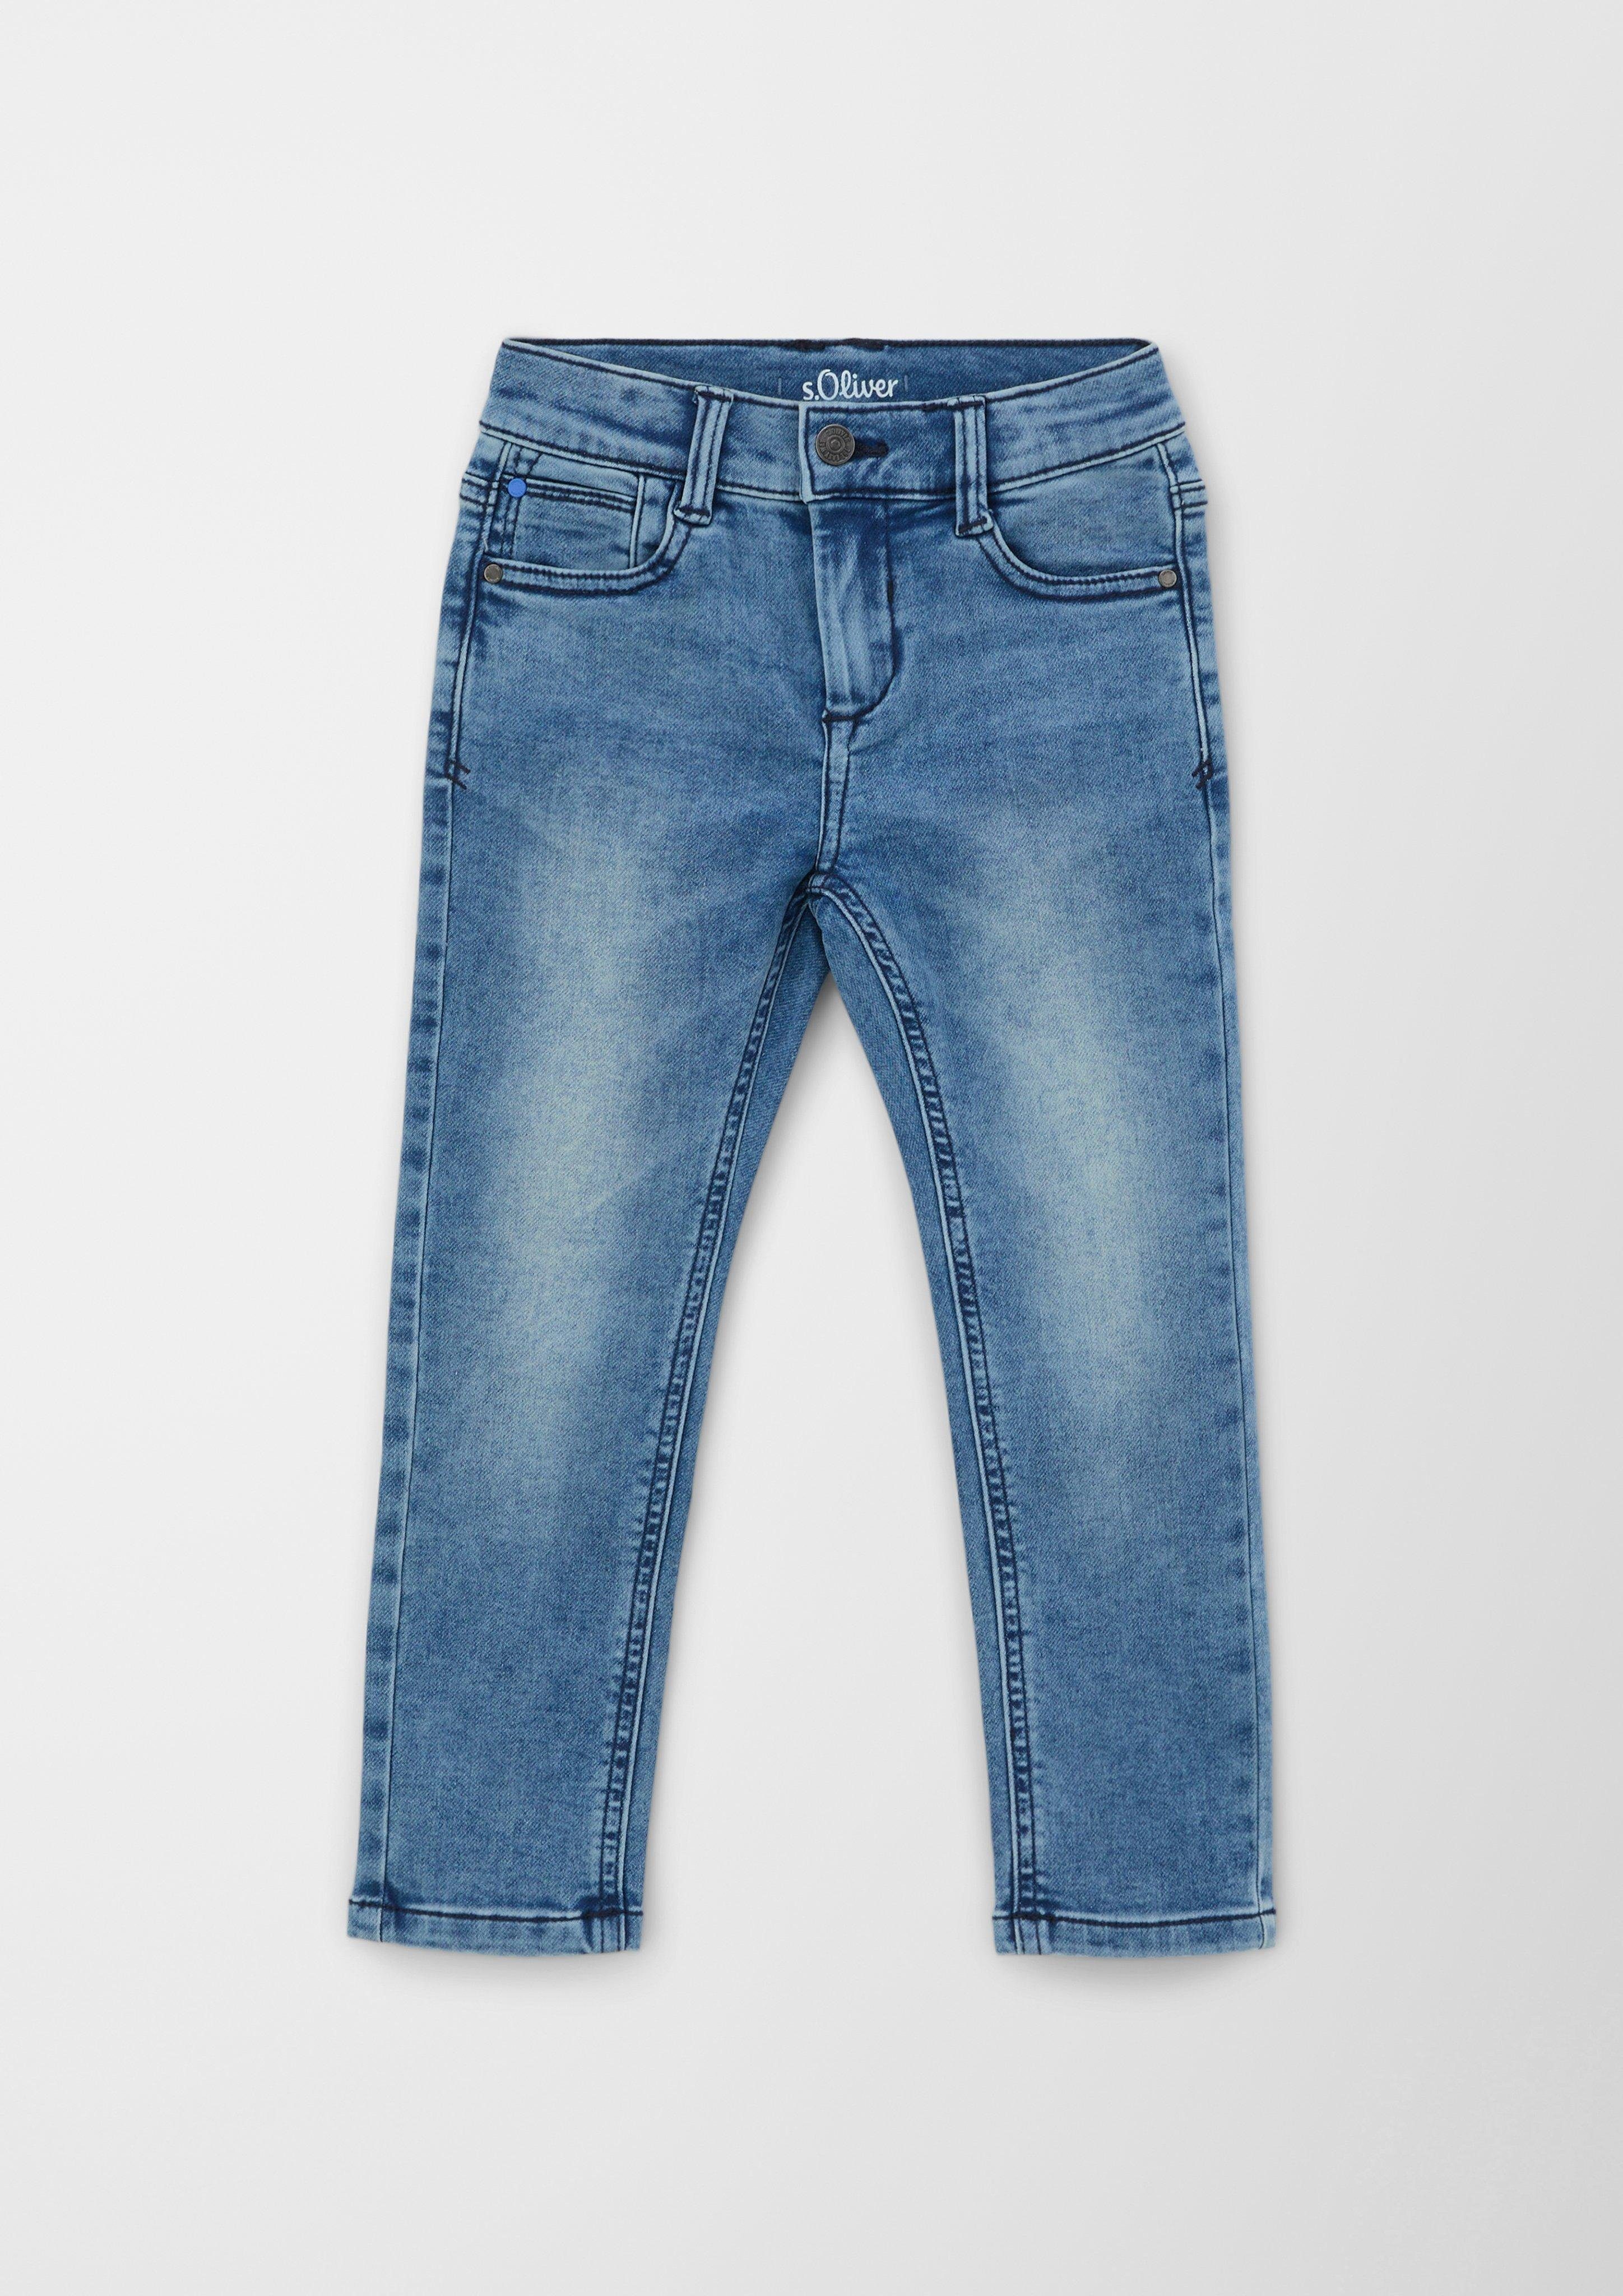 Rise 5-Pocket-Jeans / Mid mit mit Reißverschluss / Verschluss, im mit Leg als Knopf / Straight Fit s.Oliver Regular 5-Pocket-Design, Pelle Jeans Waschung, Taschen